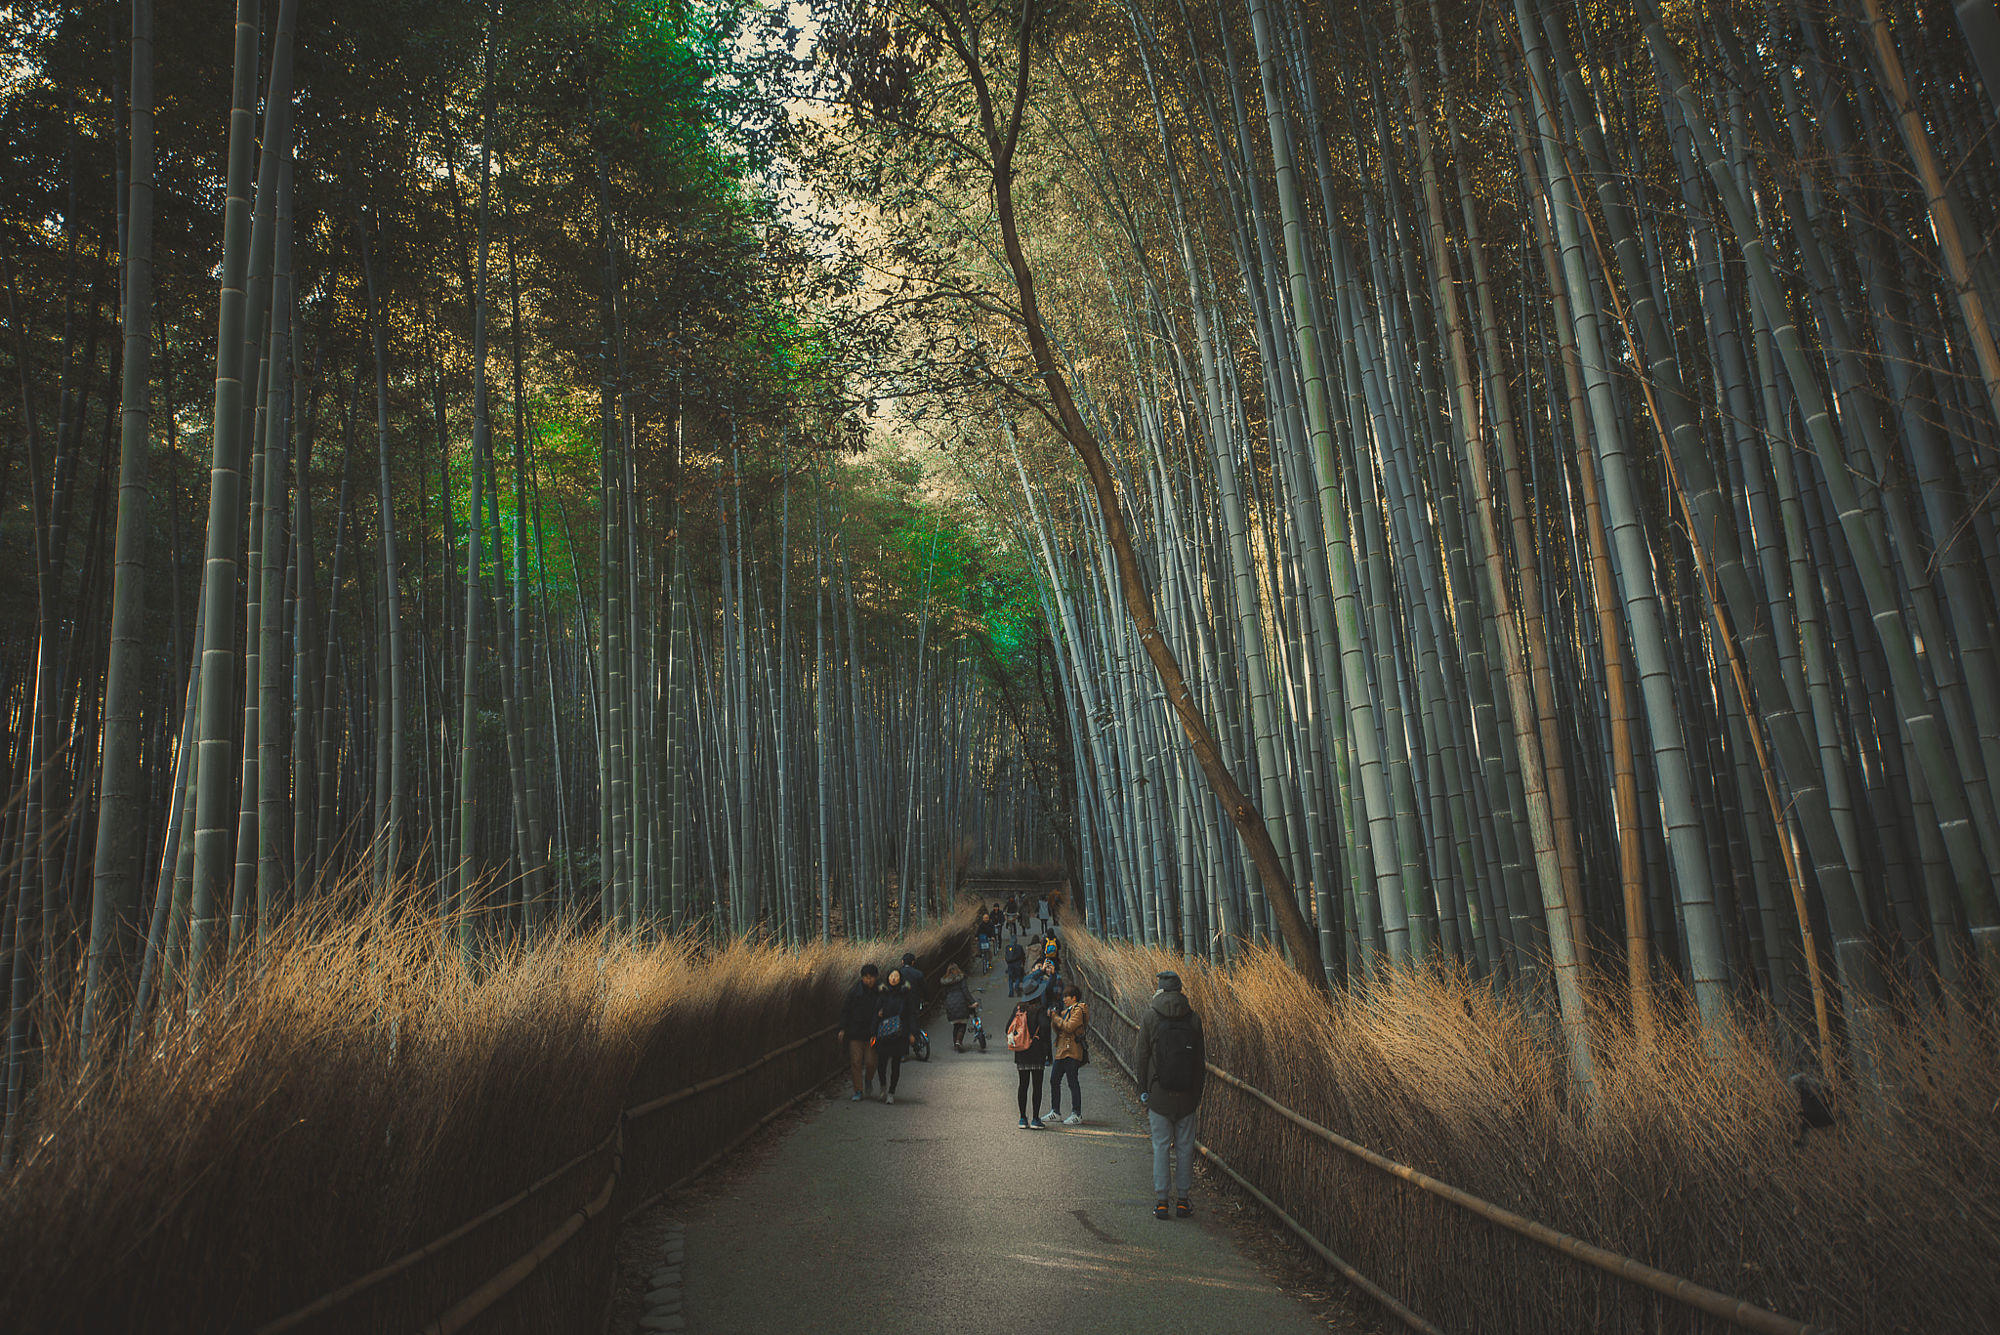 Kyoto's Arashiyama forest